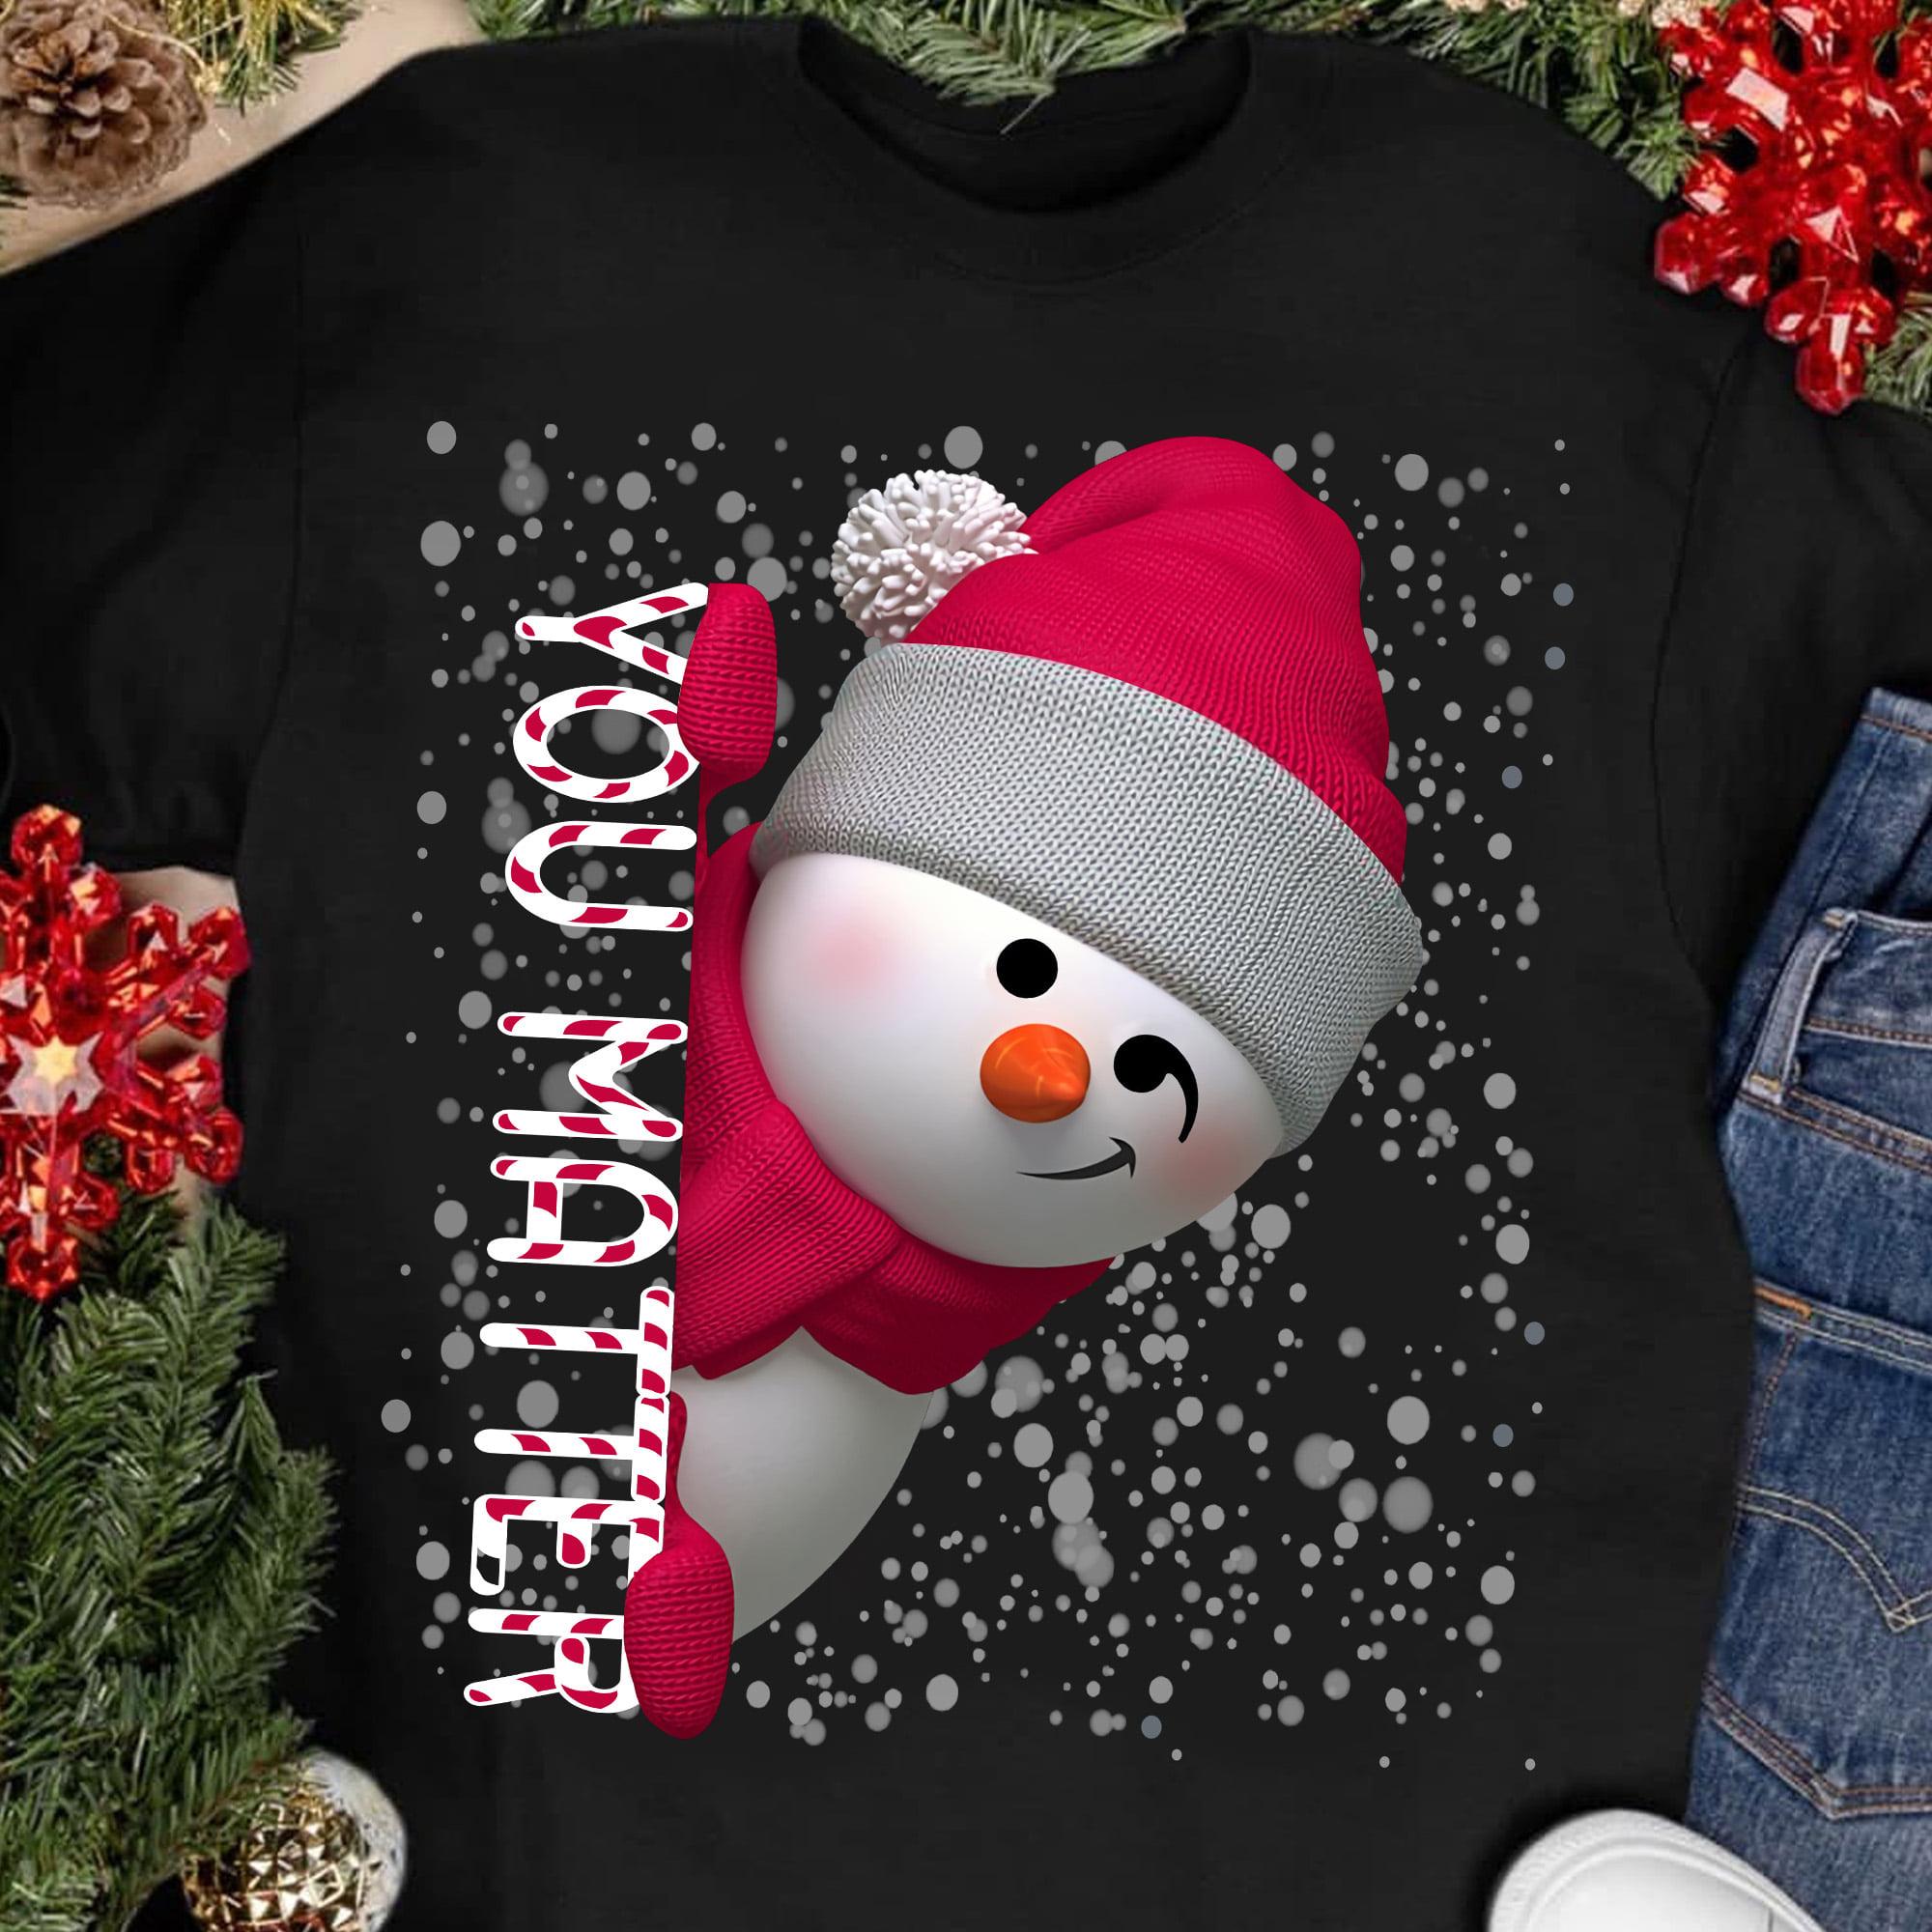 Suicide Christmas Snowman, Suicide Symbol - You matter